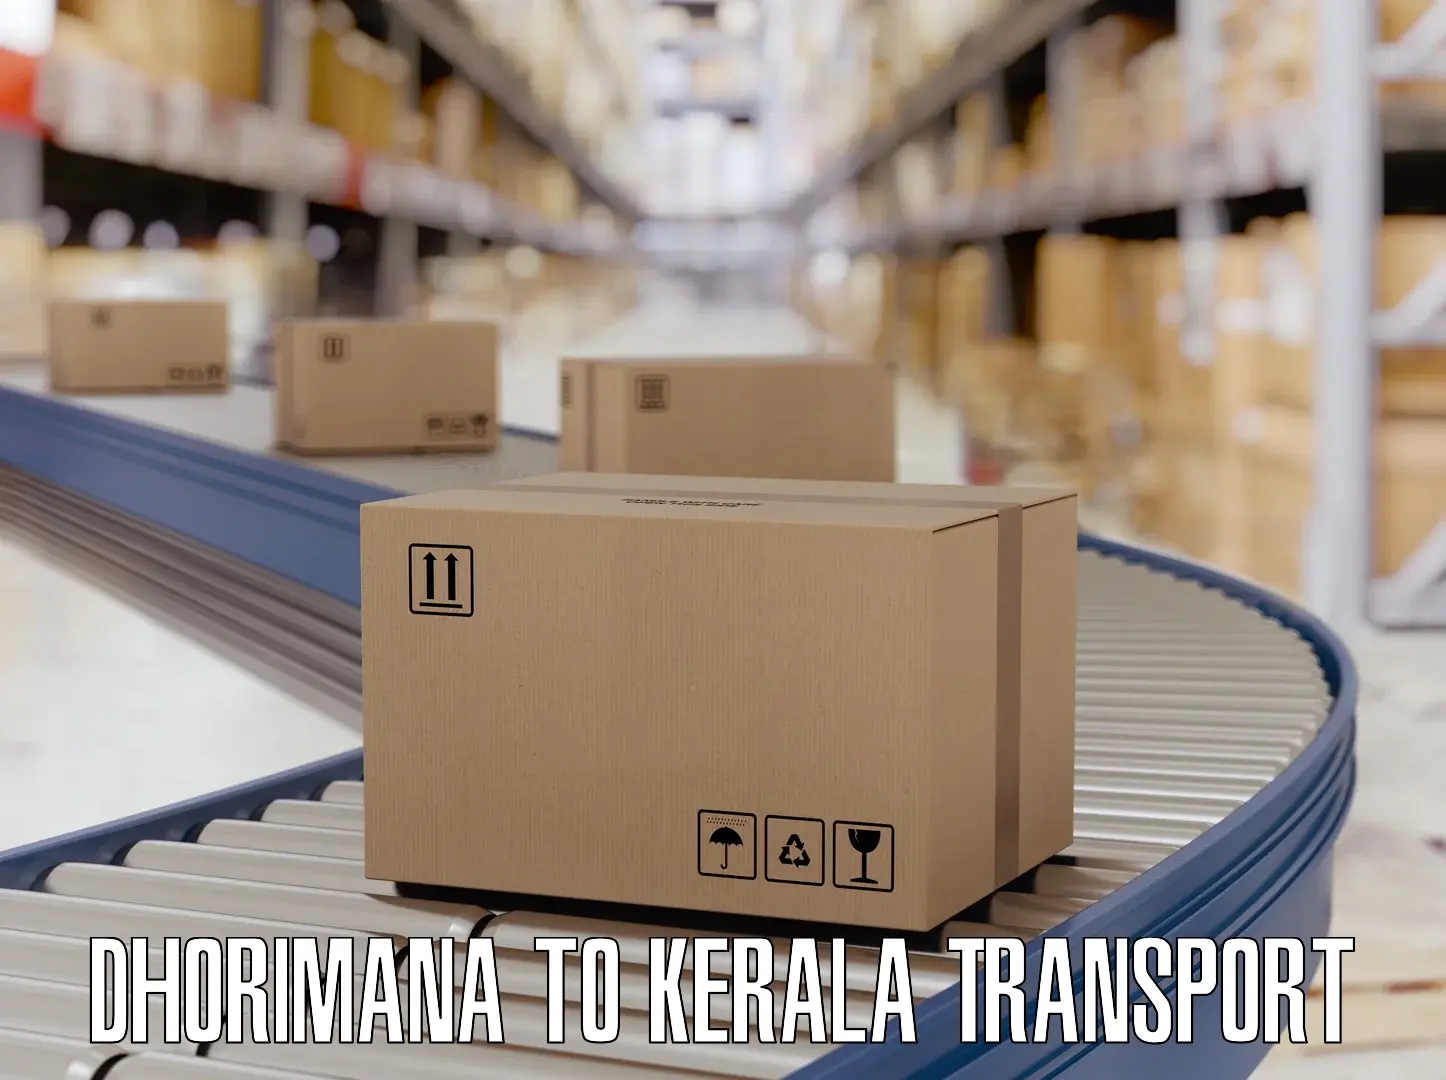 Furniture transport service Dhorimana to Kiliyanthara